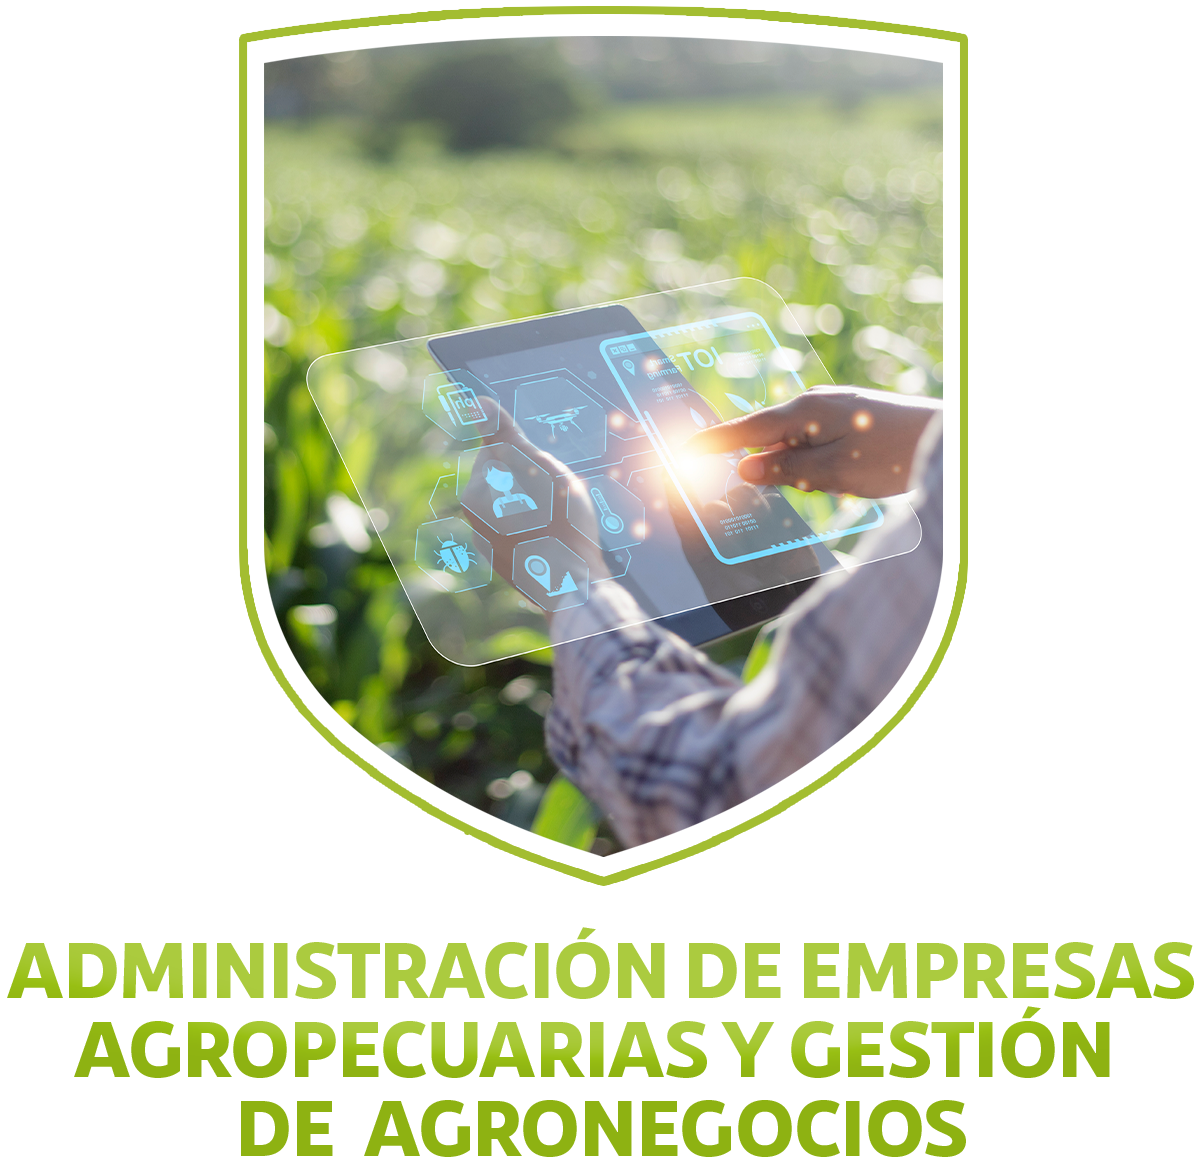 UDI - ADMINISTRACIÓN DE EMPRESAS AGROPECUARIAS Y GESTIÓN DE AGRONEGOCIOS